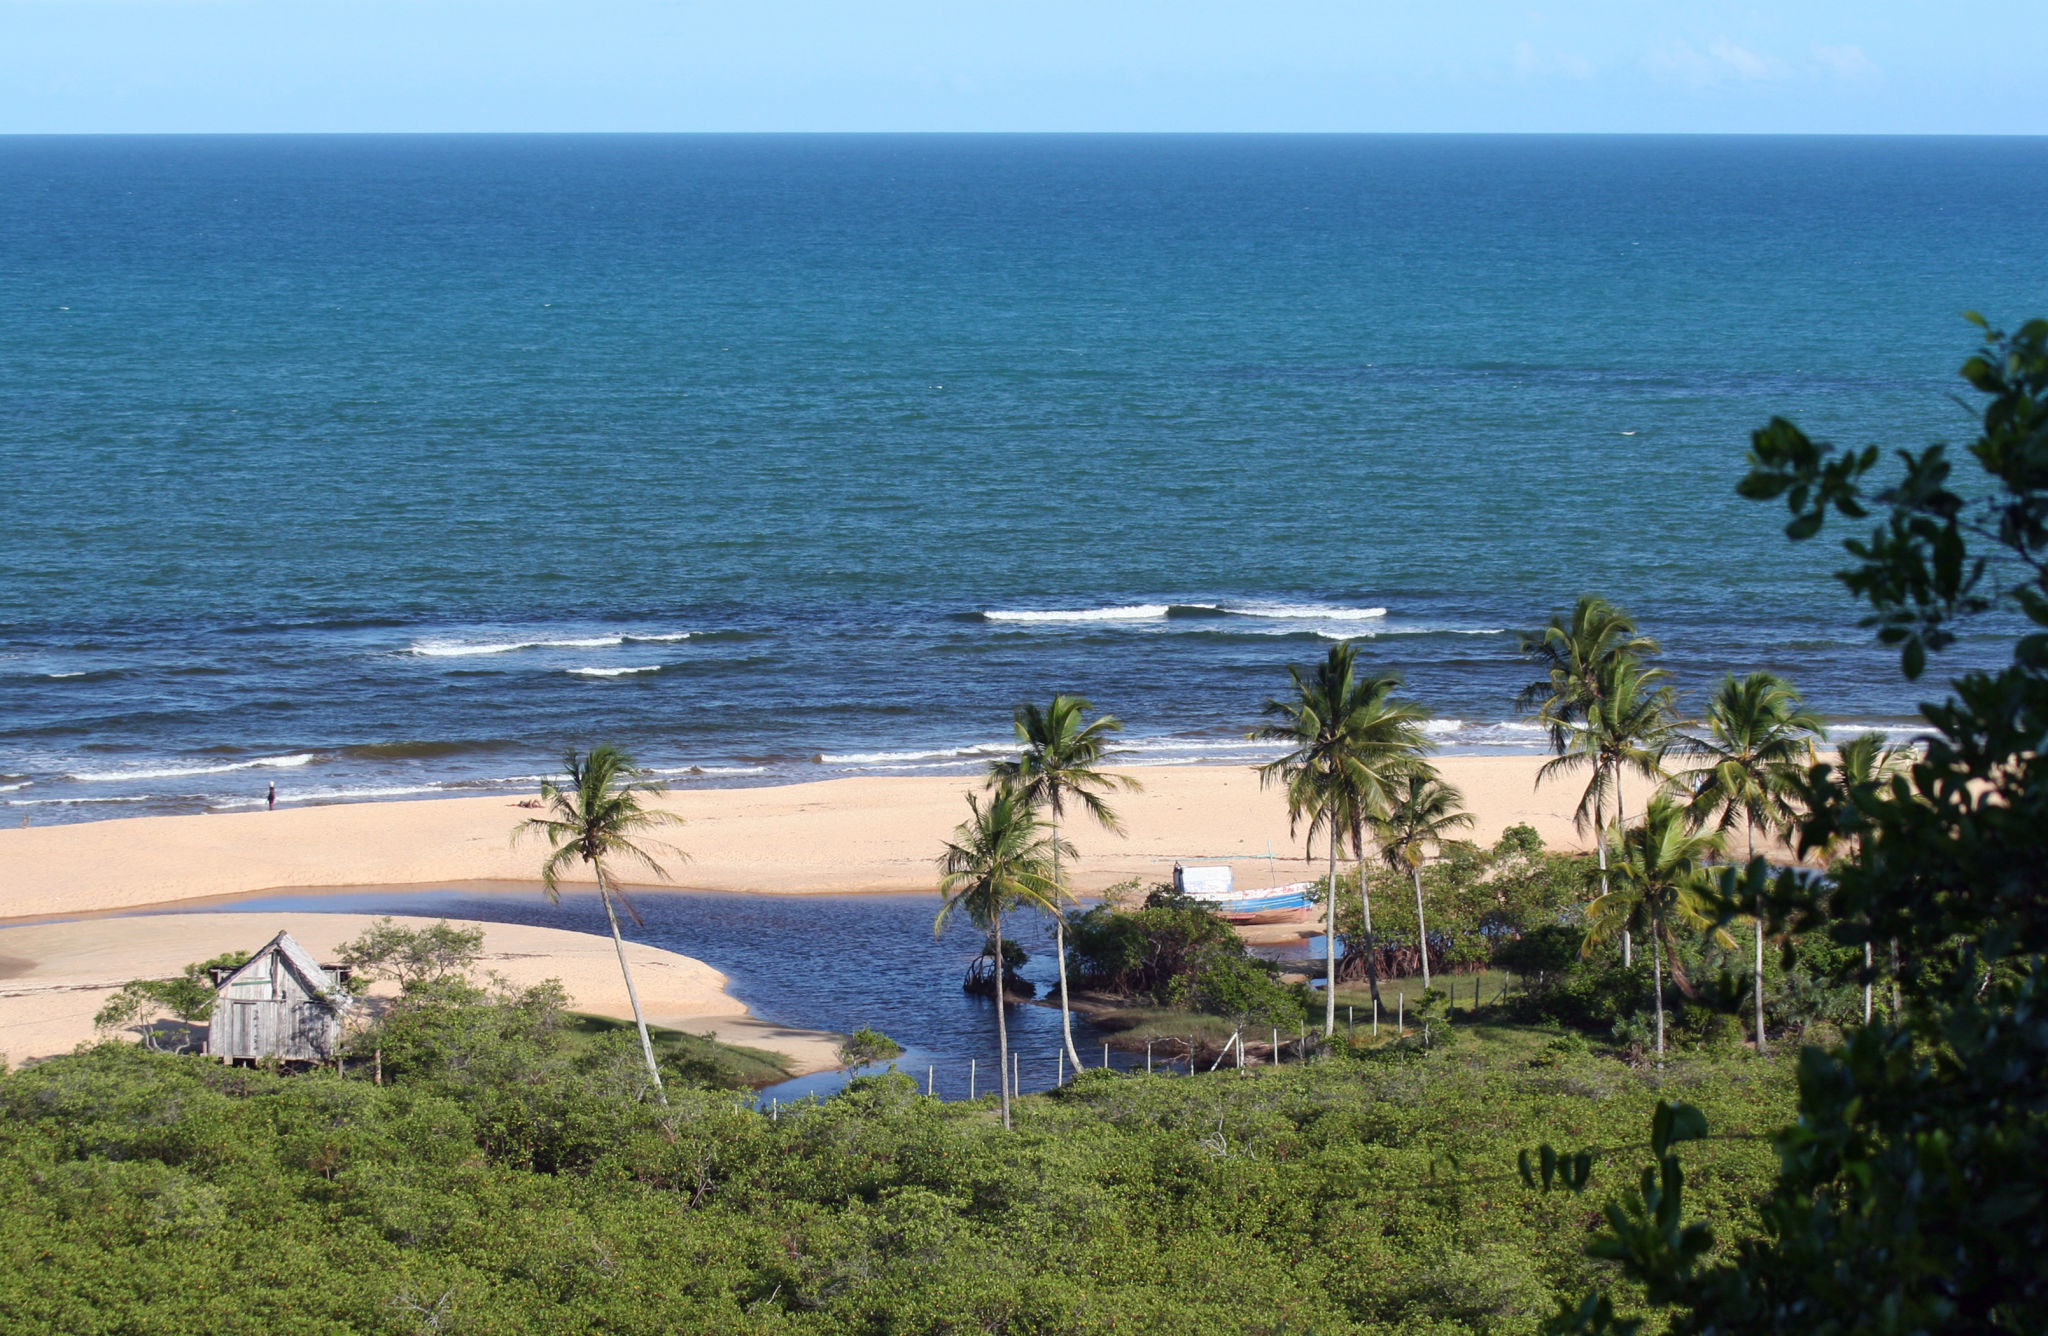 Busca por destinos de praia motiva metade das viagens de lazer dos brasileiros | Praia no litoral norte da Bahia | Conexão123